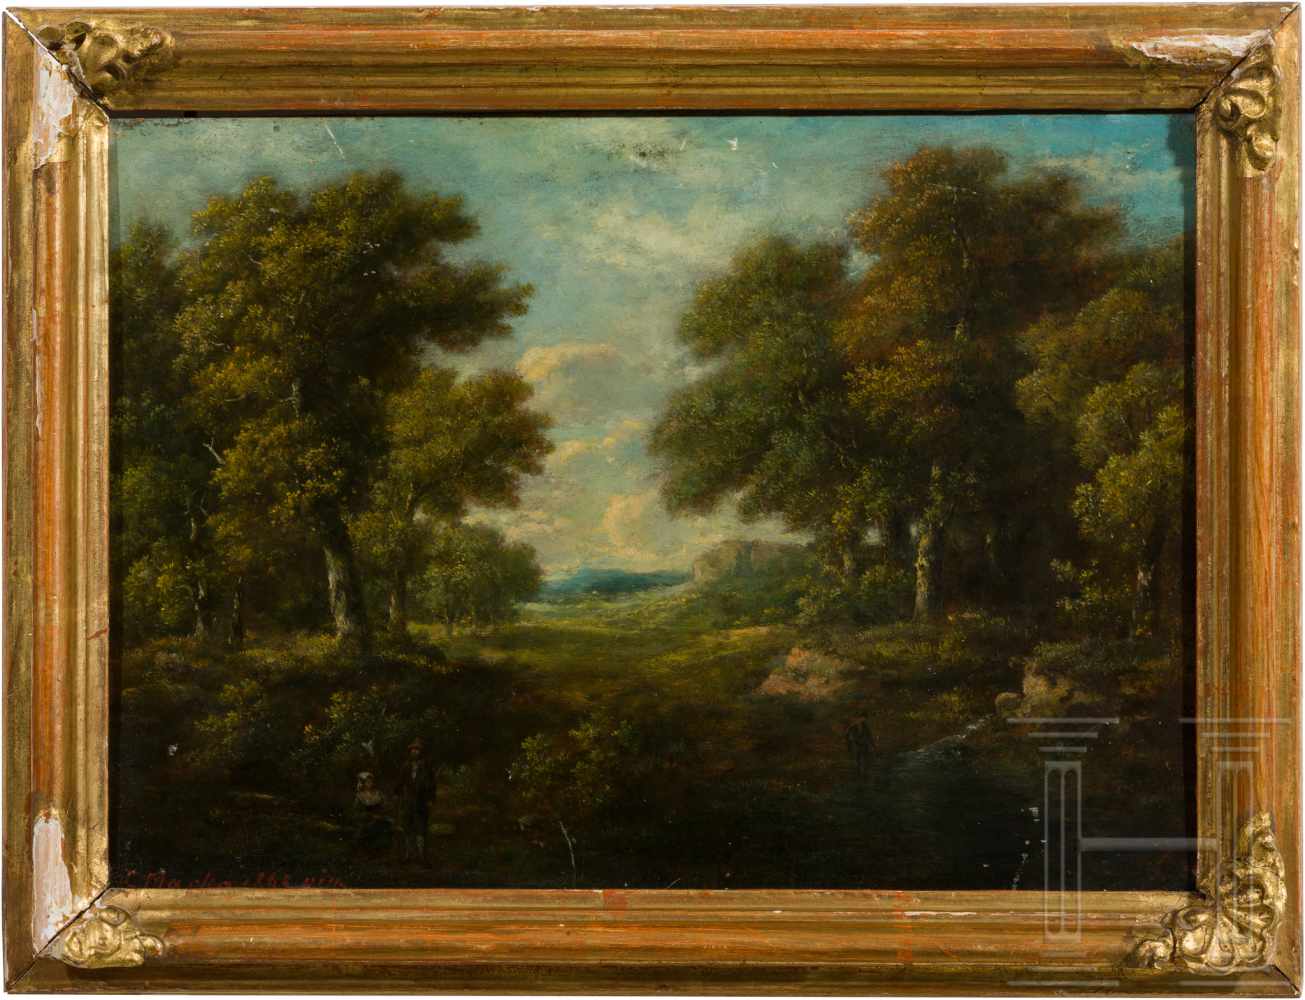 Kleinformatiges Landschaftsbild, Karl Marko, datiert 1865Öl auf Holz. Waldszene mit zentralem